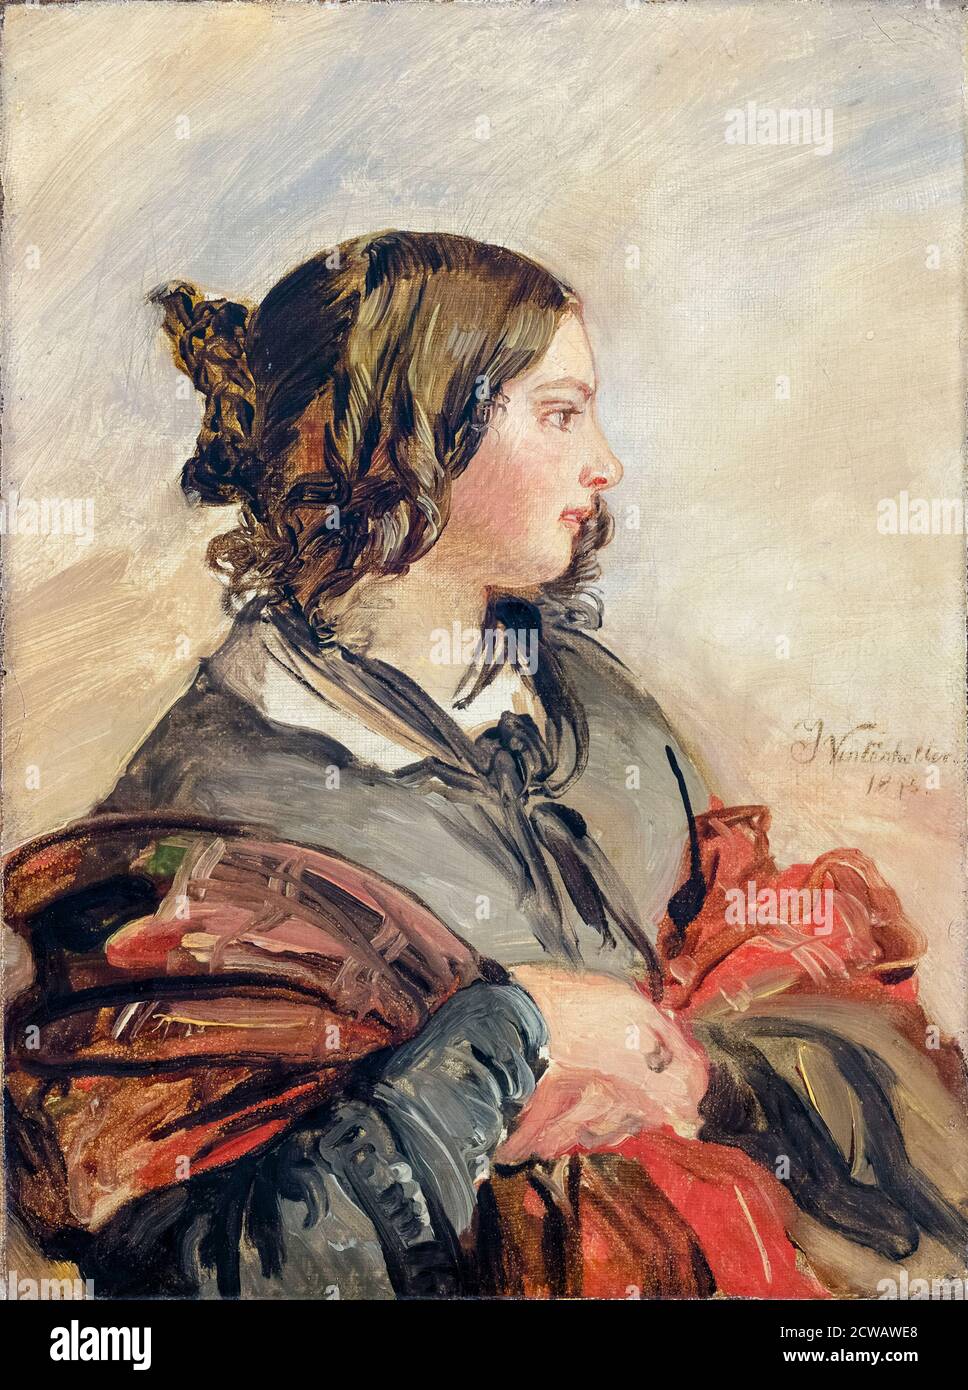 Reine Victoria du Royaume-Uni (1819-1901) en tant que jeune femme, portrait peint par Franz Xaver Winterhalter, 1843 Banque D'Images